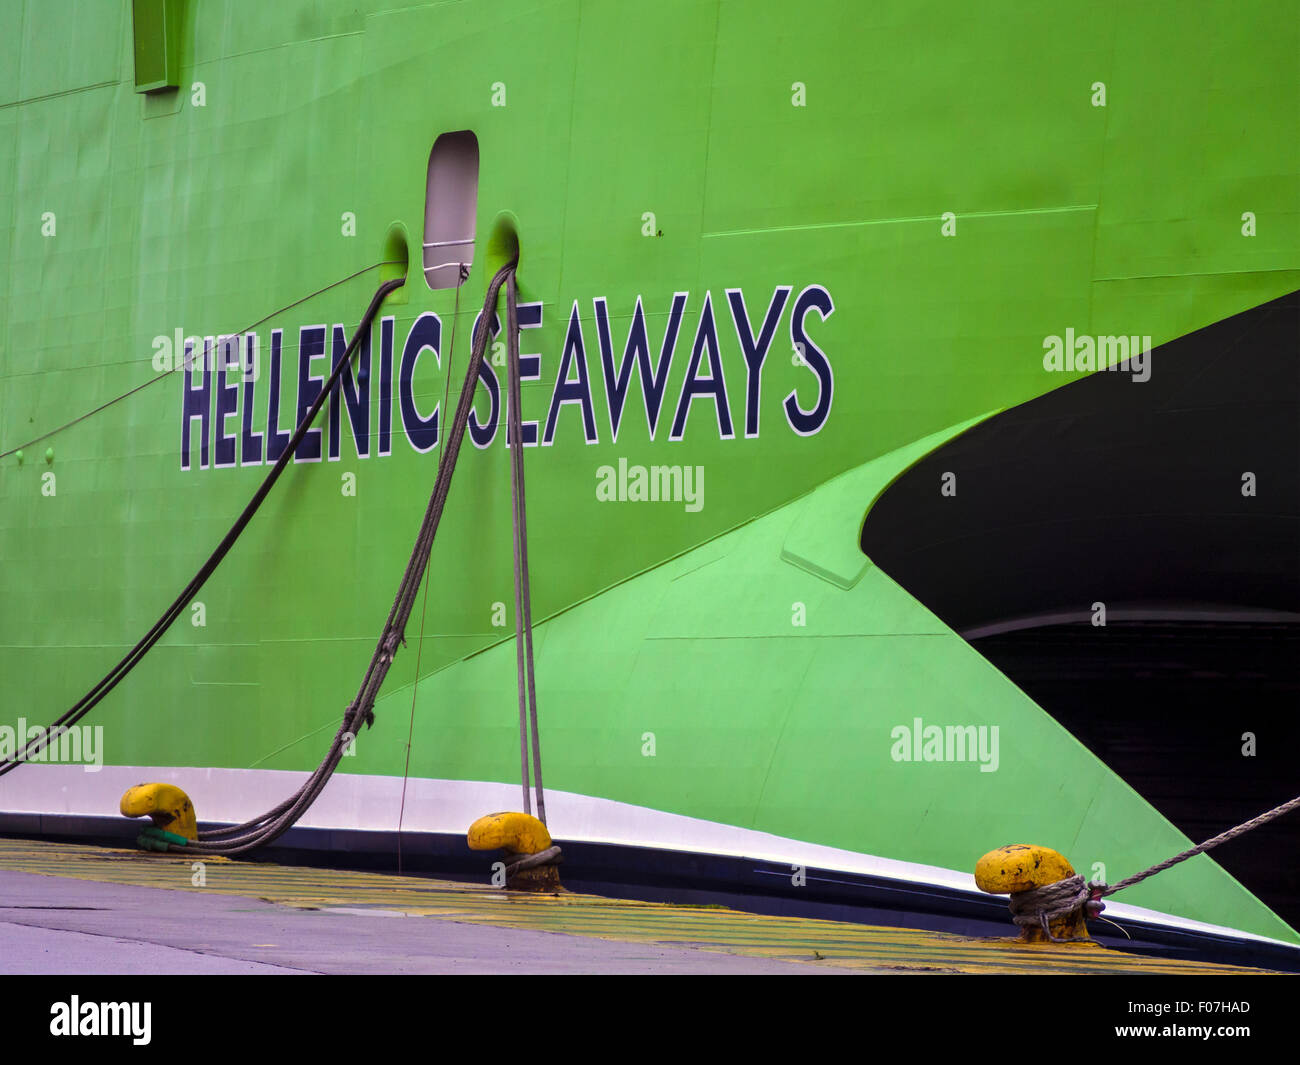 ATENE, GRECIA - 26 MARZO 2015: Dettaglio della nave traghetto greca Hellenic Seaways nel porto del Pireo Foto Stock